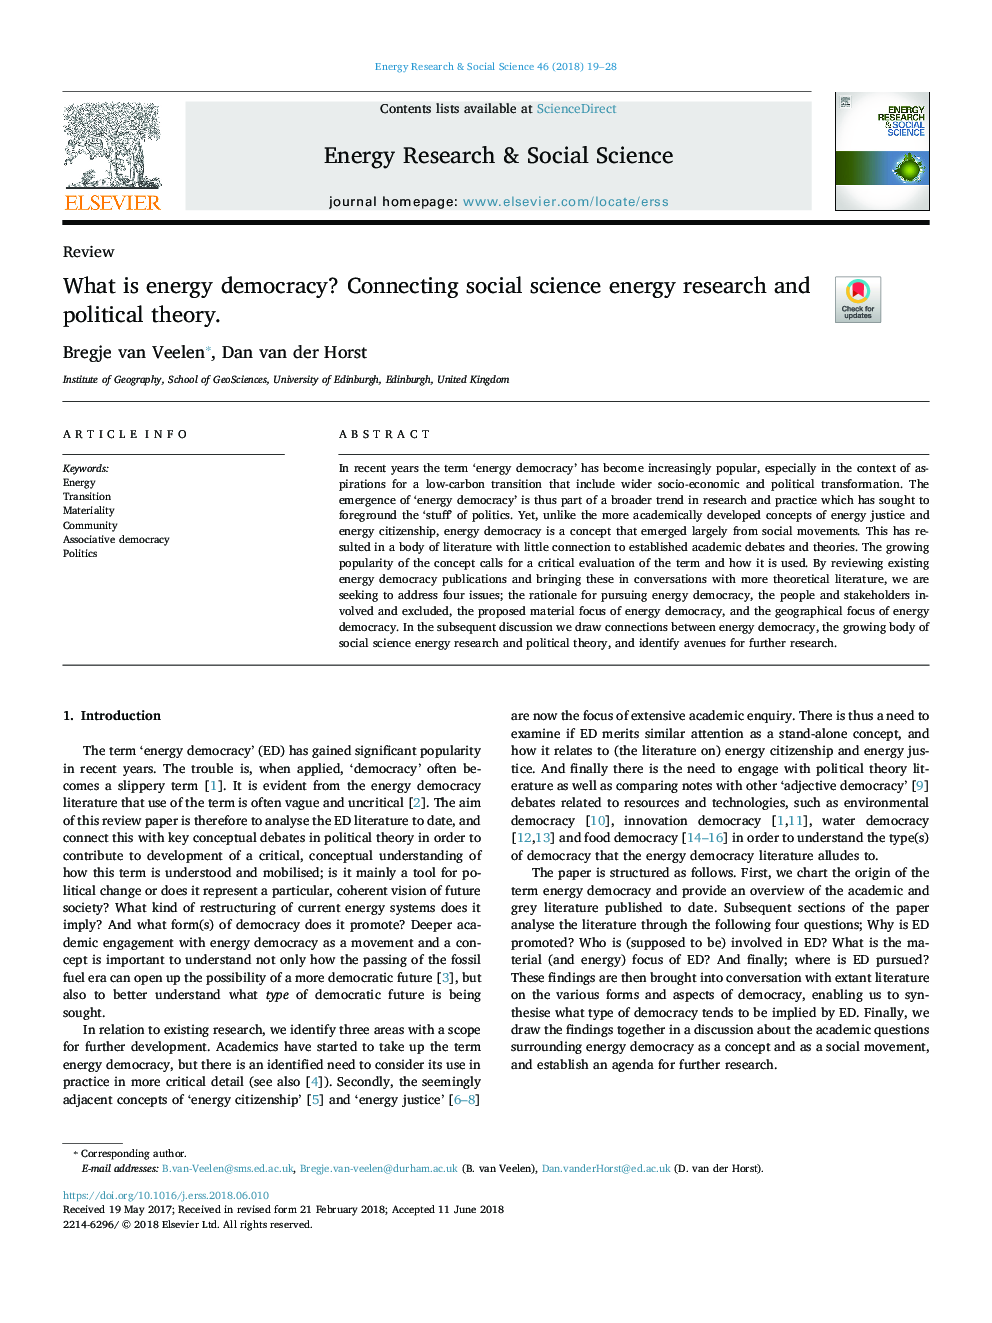 دموکراسی انرژی چیست؟ اتصال تحقیقات انرژی علوم اجتماعی و نظریه سیاسی. 